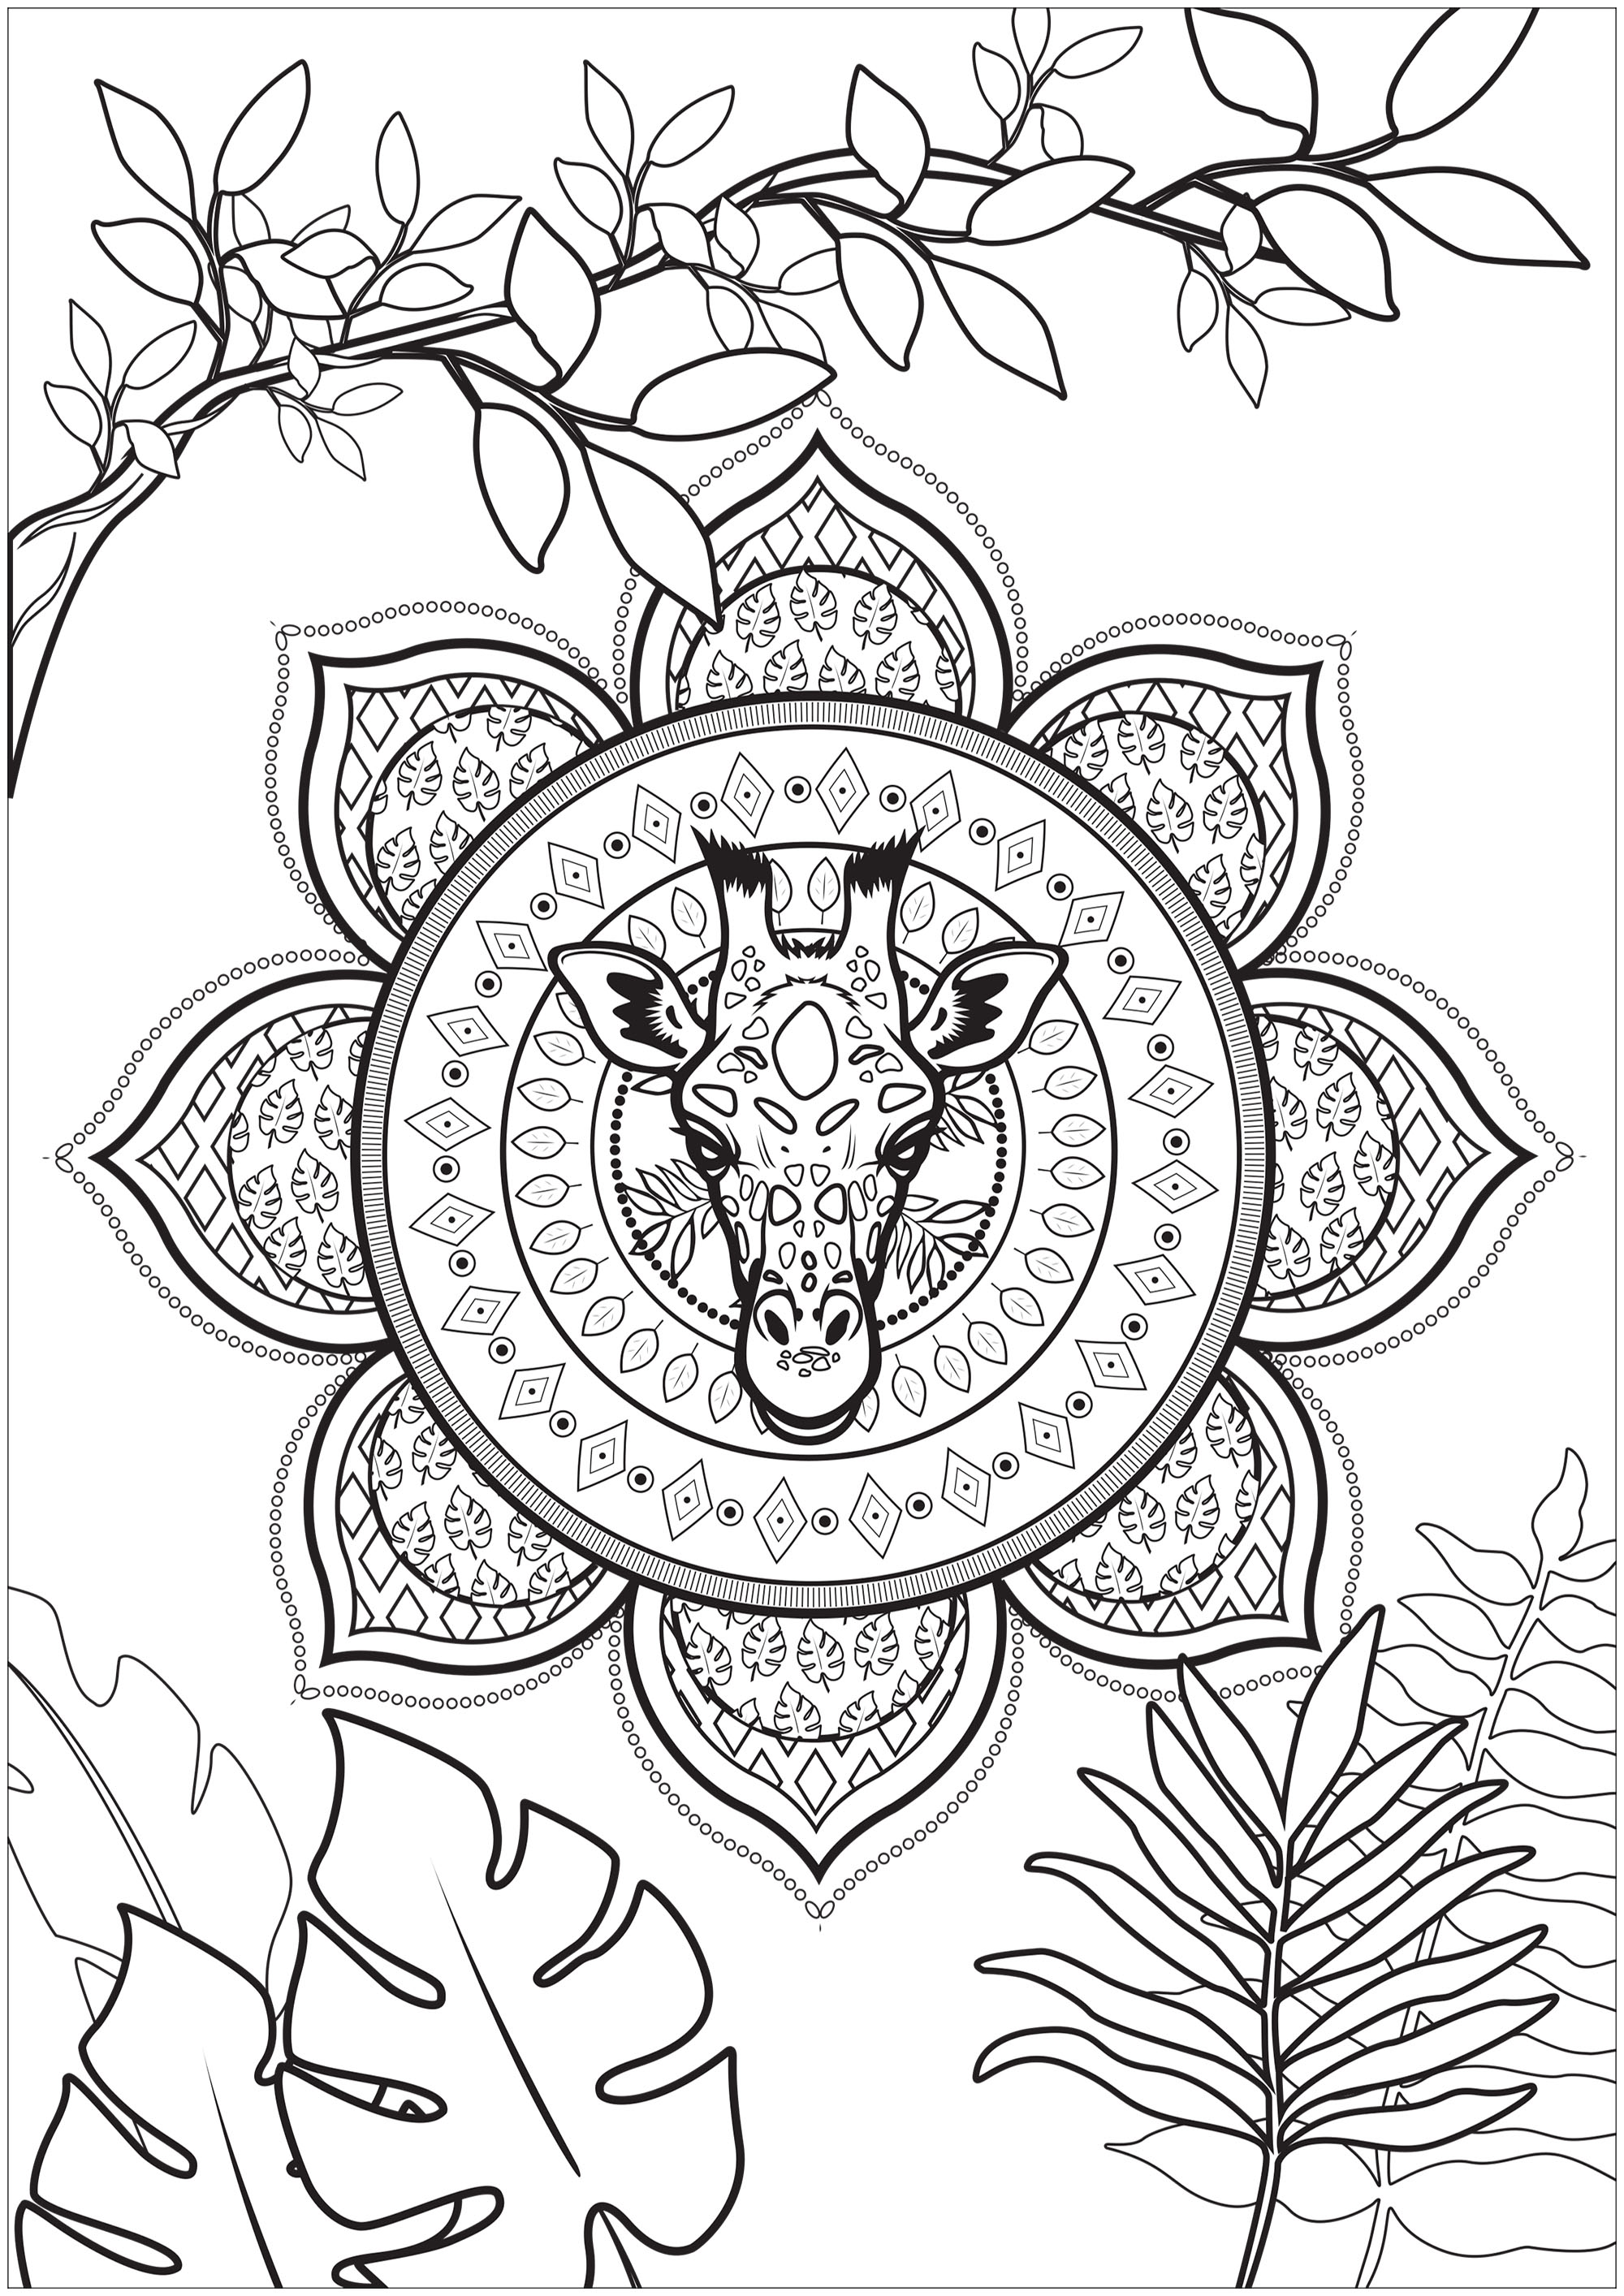 Colorear una cabeza de jirafa incrustada en un mandala tropical con bonitas ramas y hojas para colorear, Artista : Lea